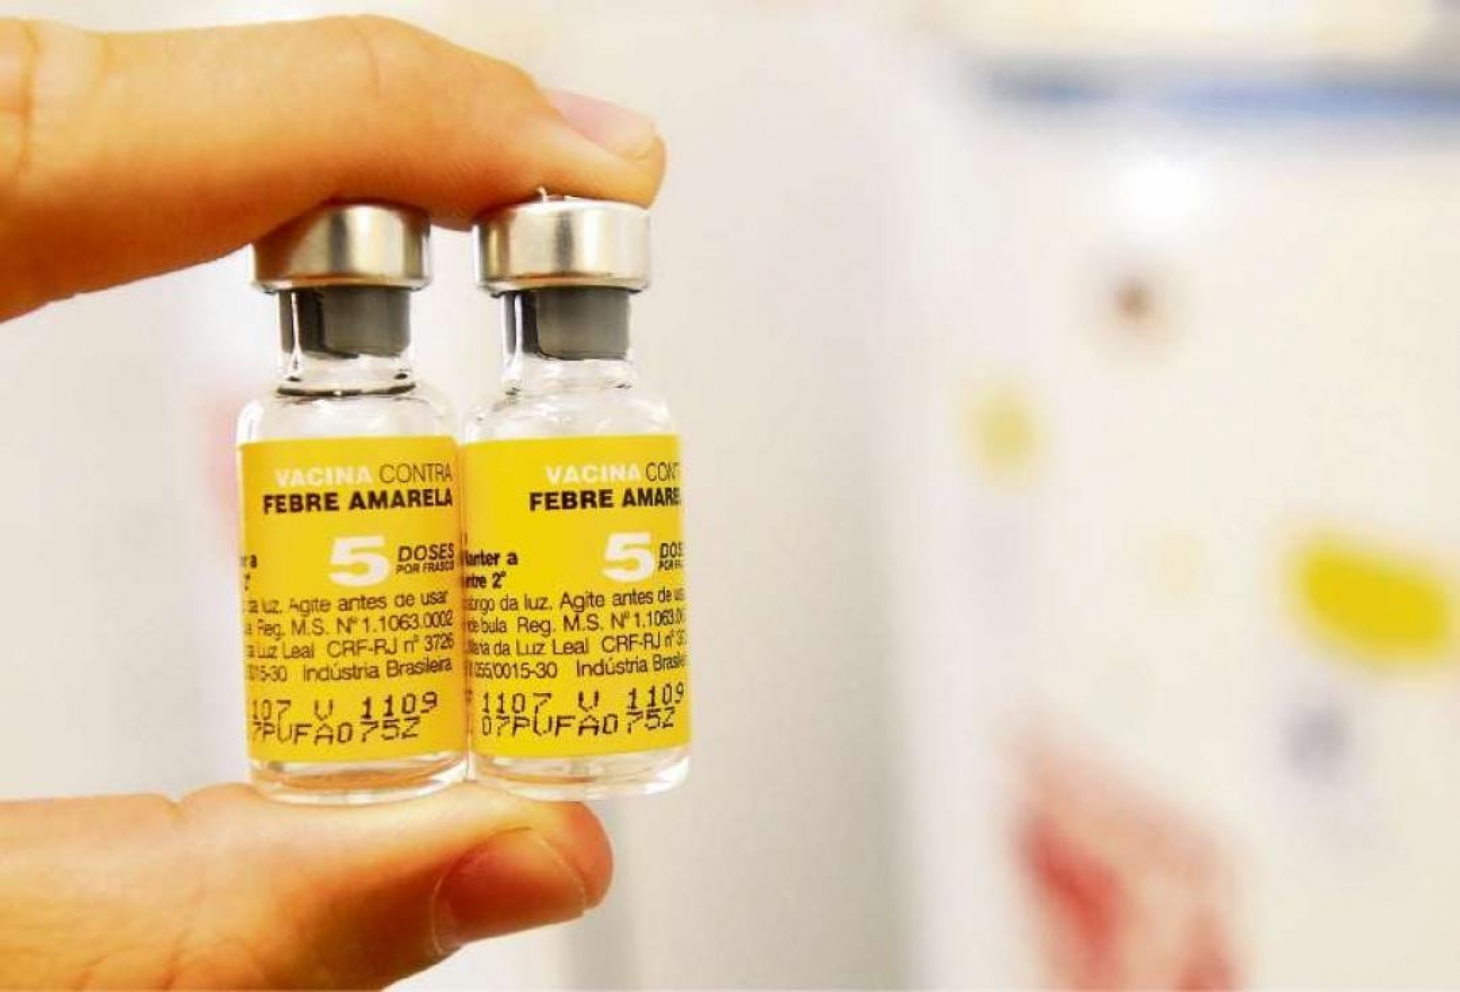 Campanha de vacinação contra febre amarela começa na segunda-feira (10) | Jornal da Orla